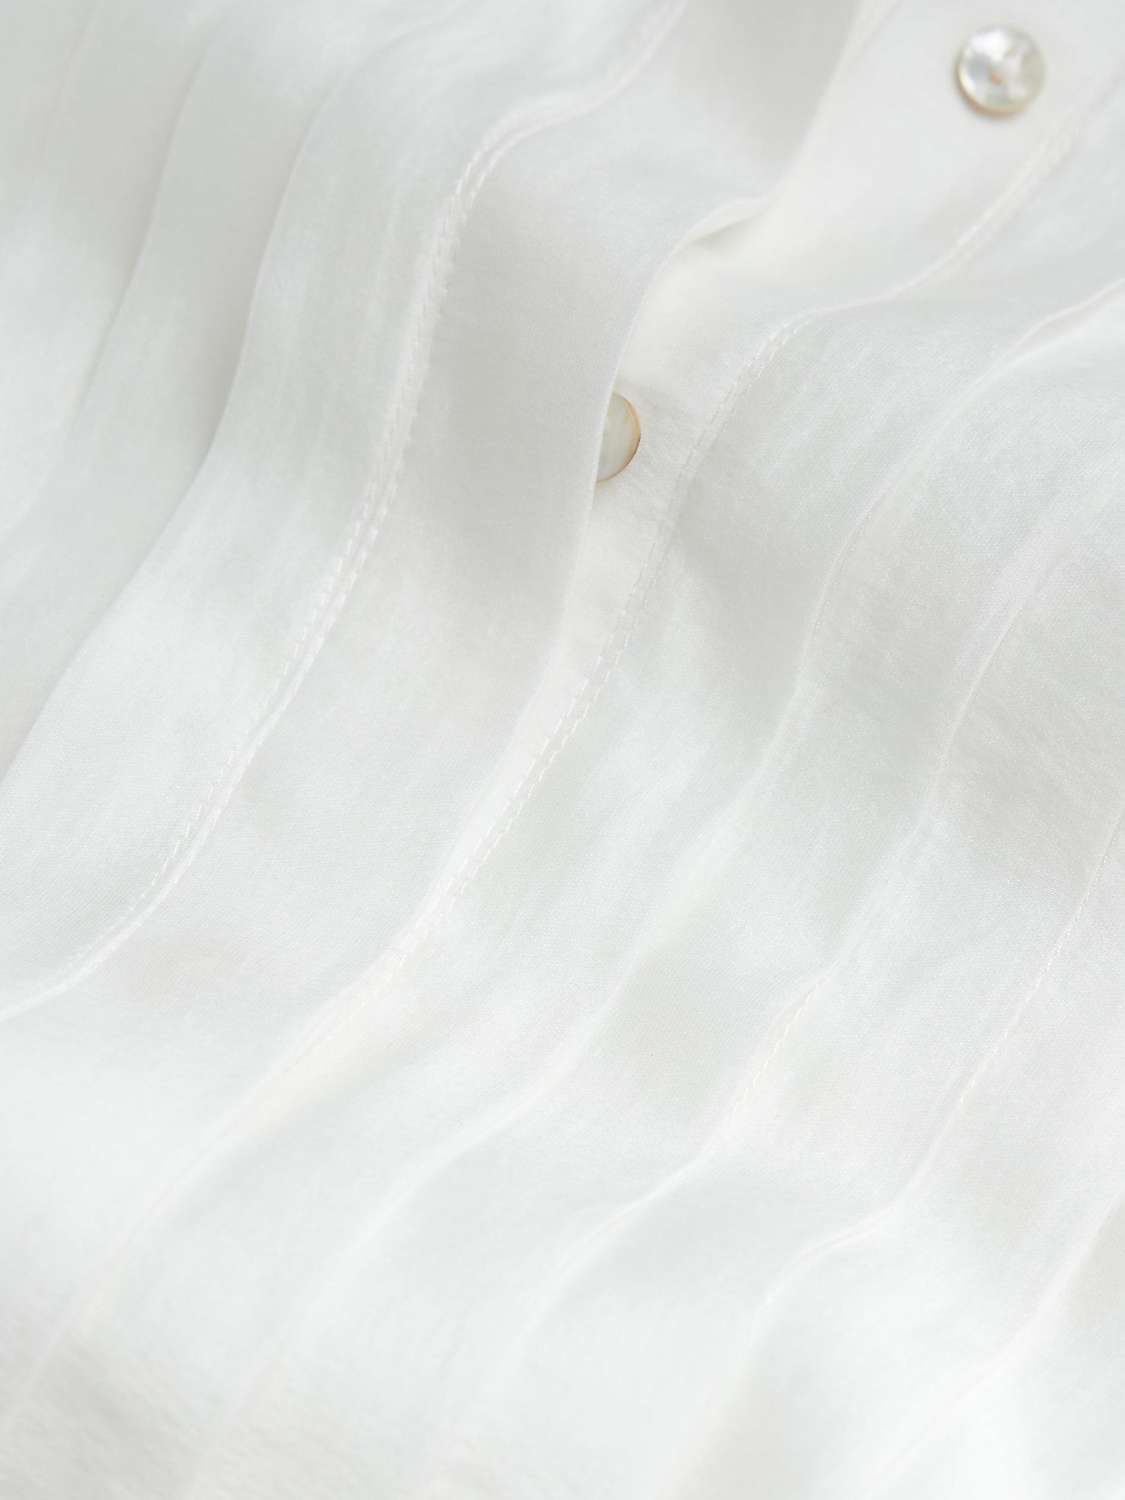 Buy Mint Velvet Longline Sheer Beach Shirt, White Ivory Online at johnlewis.com